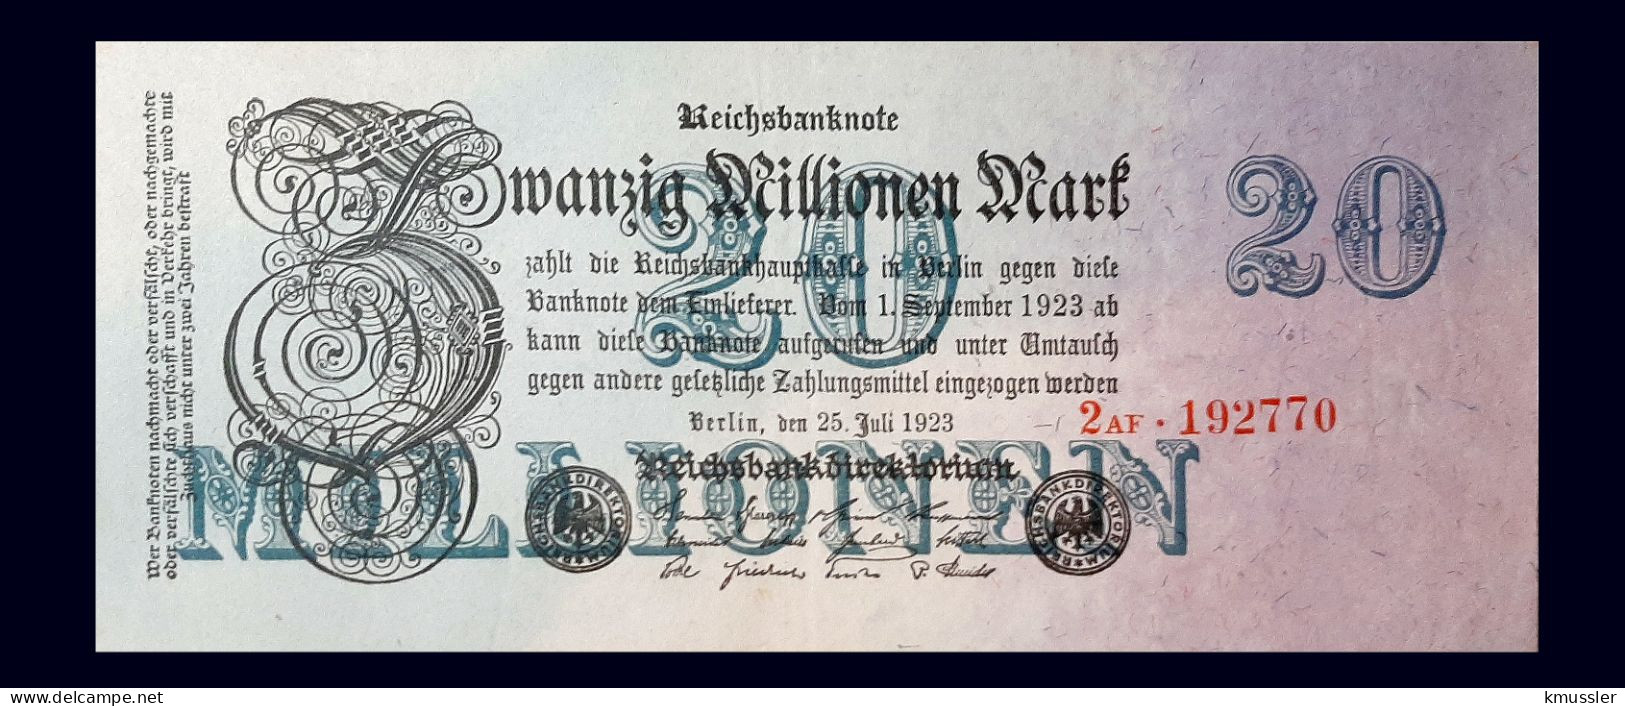 # # # Banknote Deutsches Reich (Germany) 20.000 Mark 1923 # # # - 20 Millionen Mark